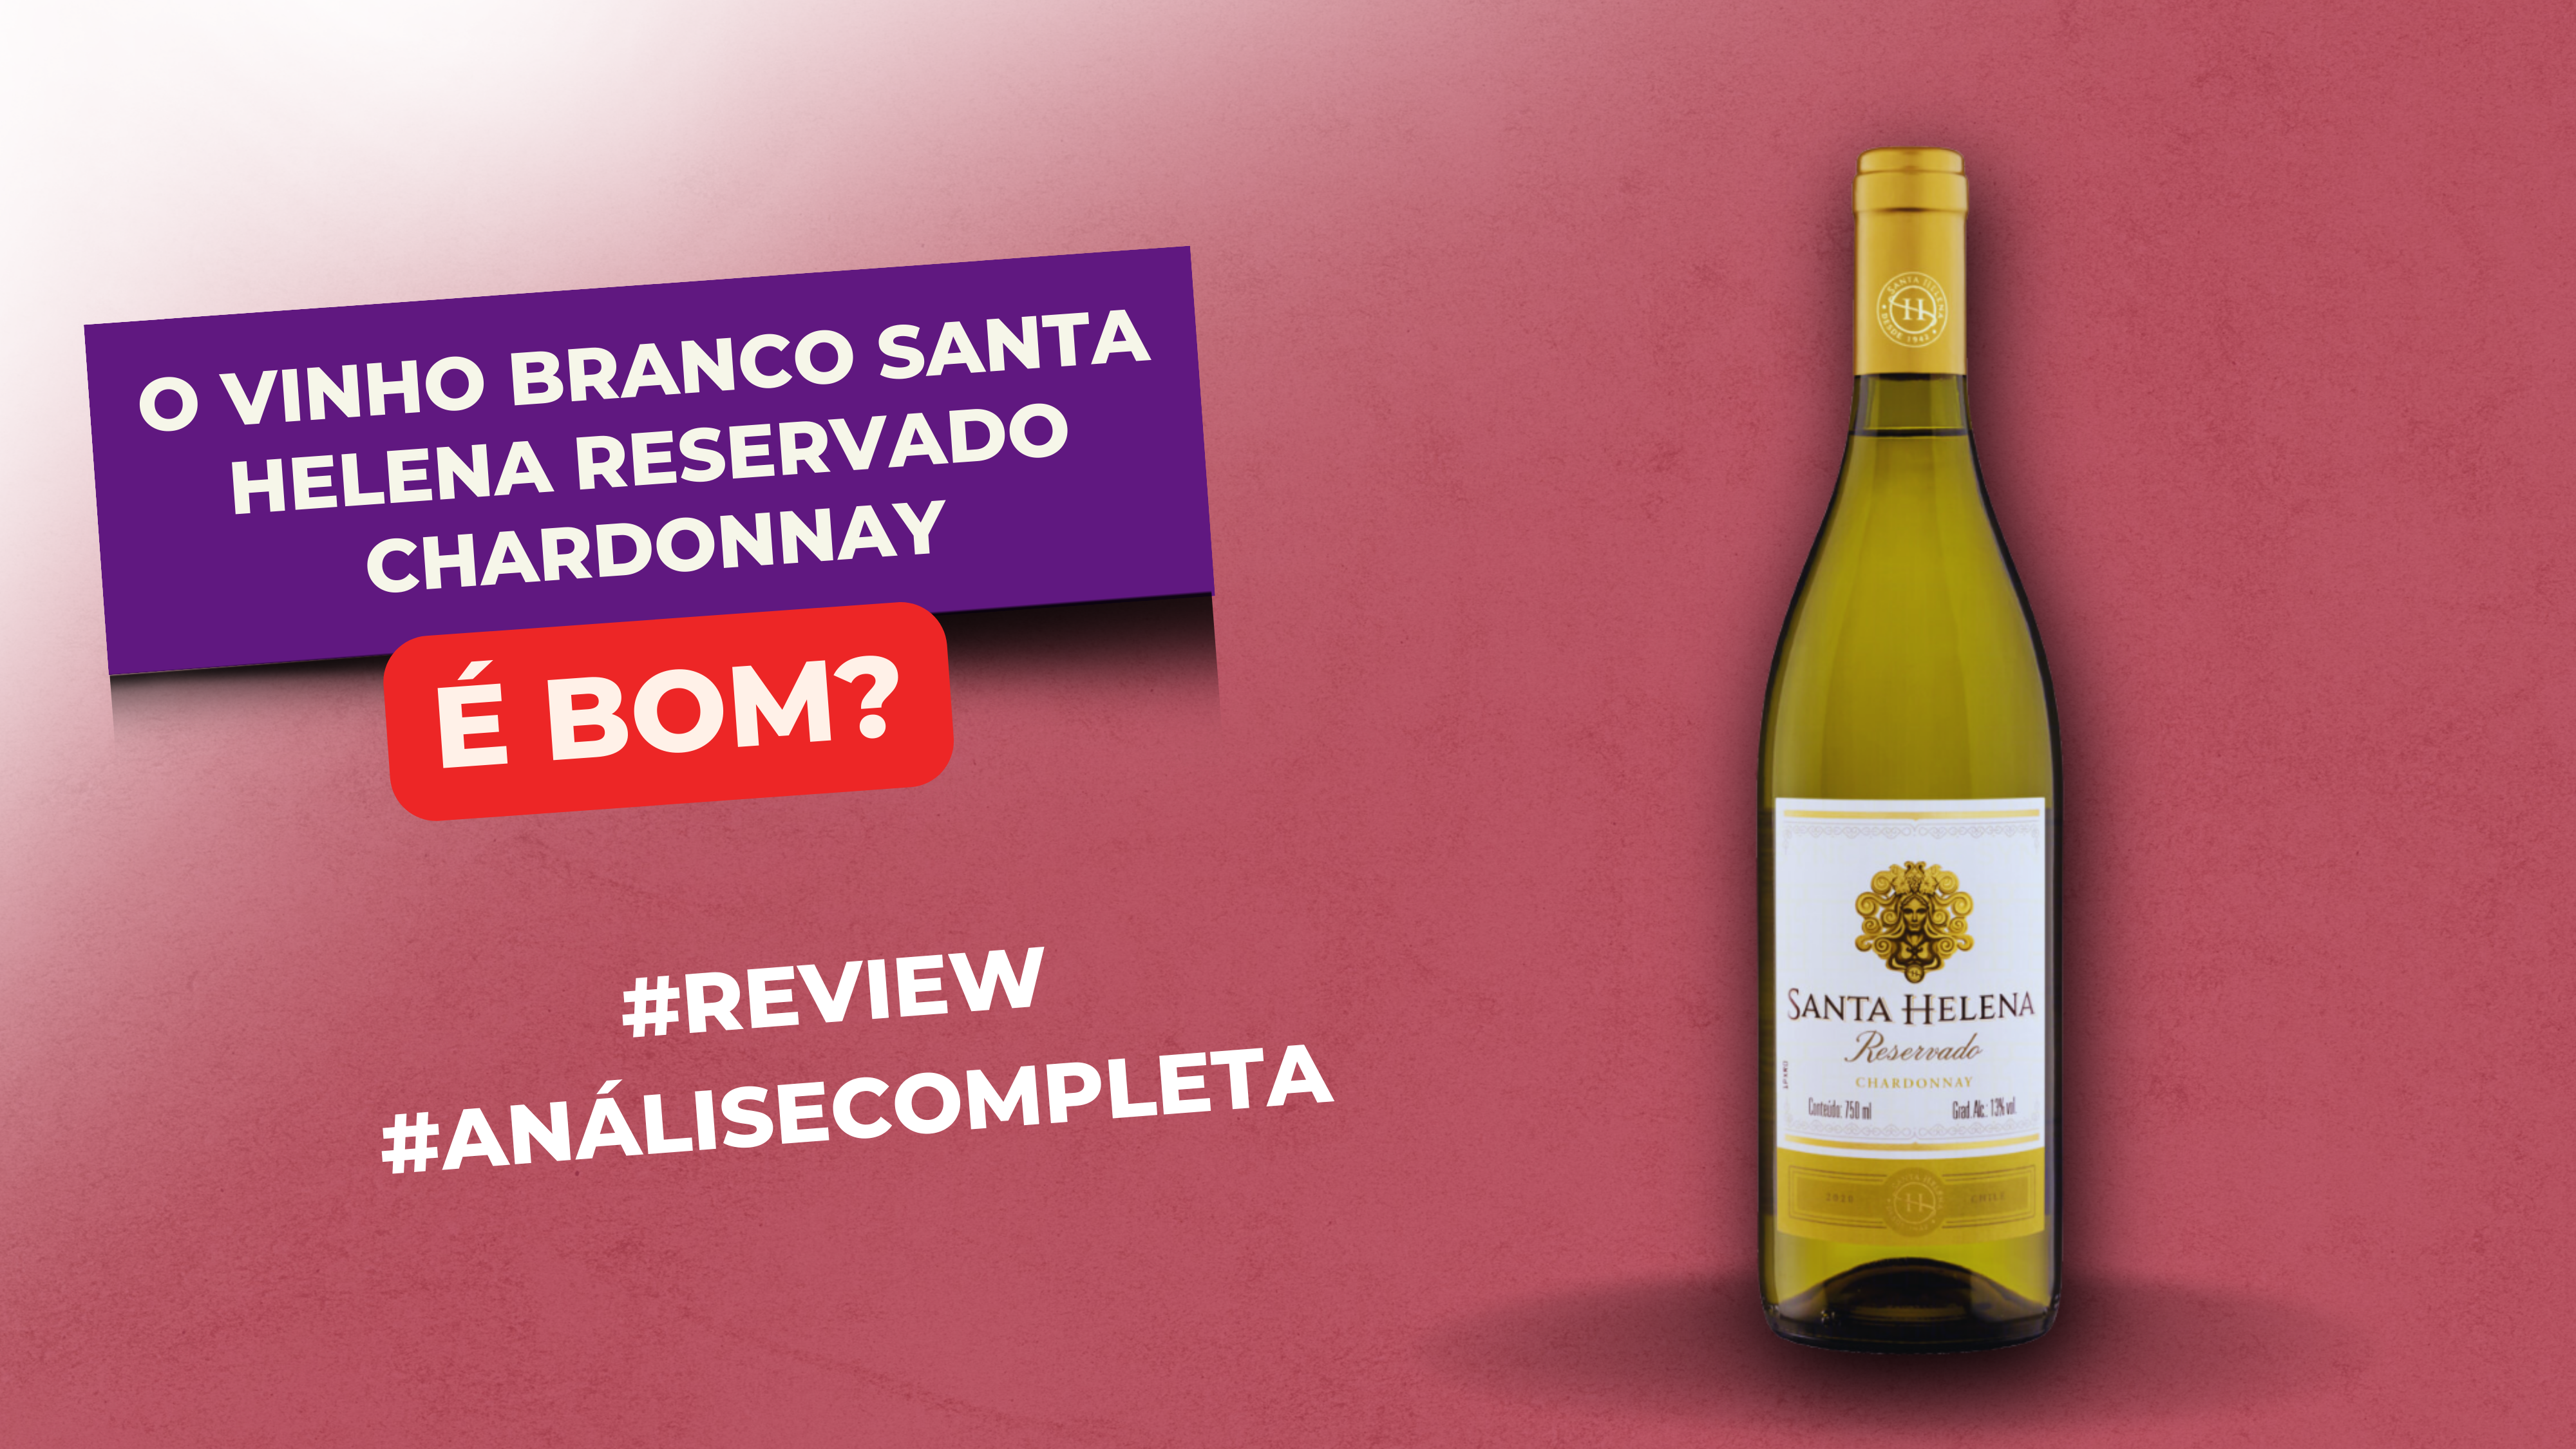 O Vinho Branco Santa Helena Reservado Chardonnay é Bom? #Review #Resenha #Avaliação